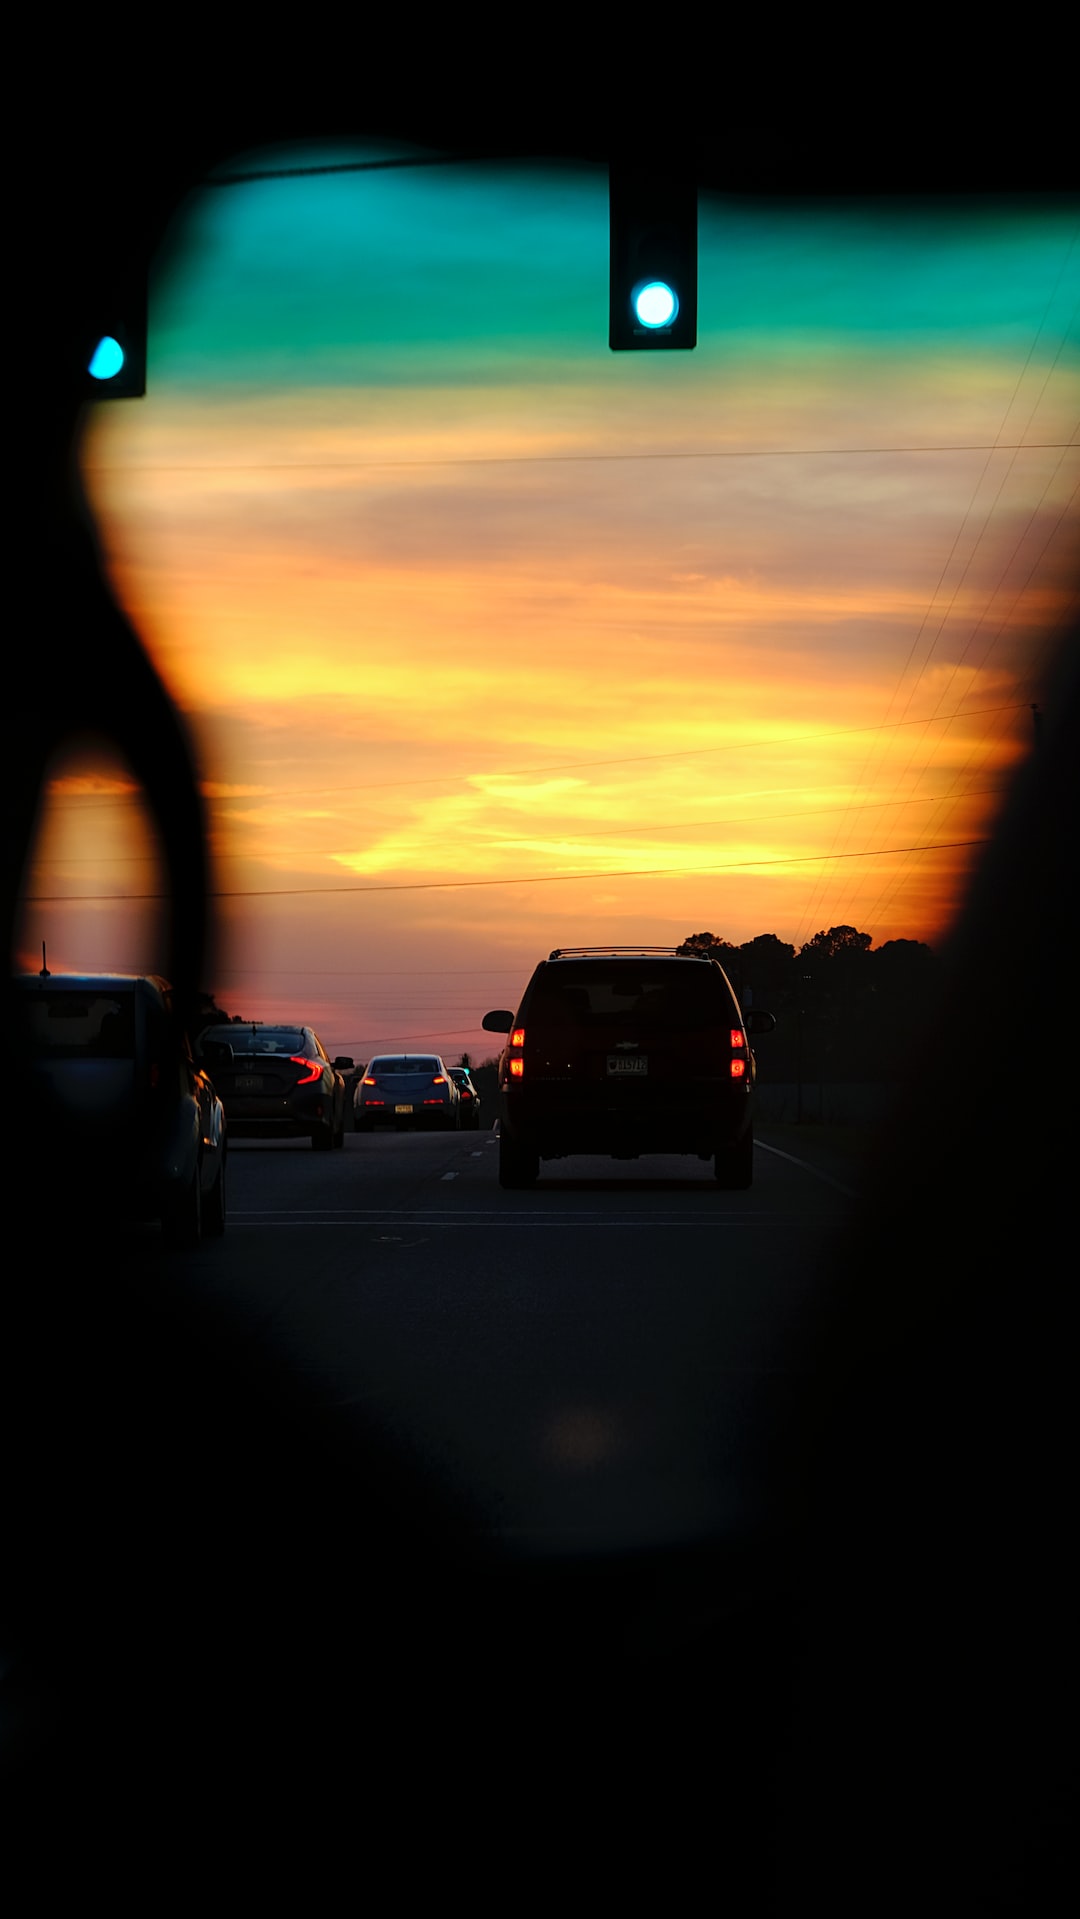 a sunset seen through a car's rear view mirror